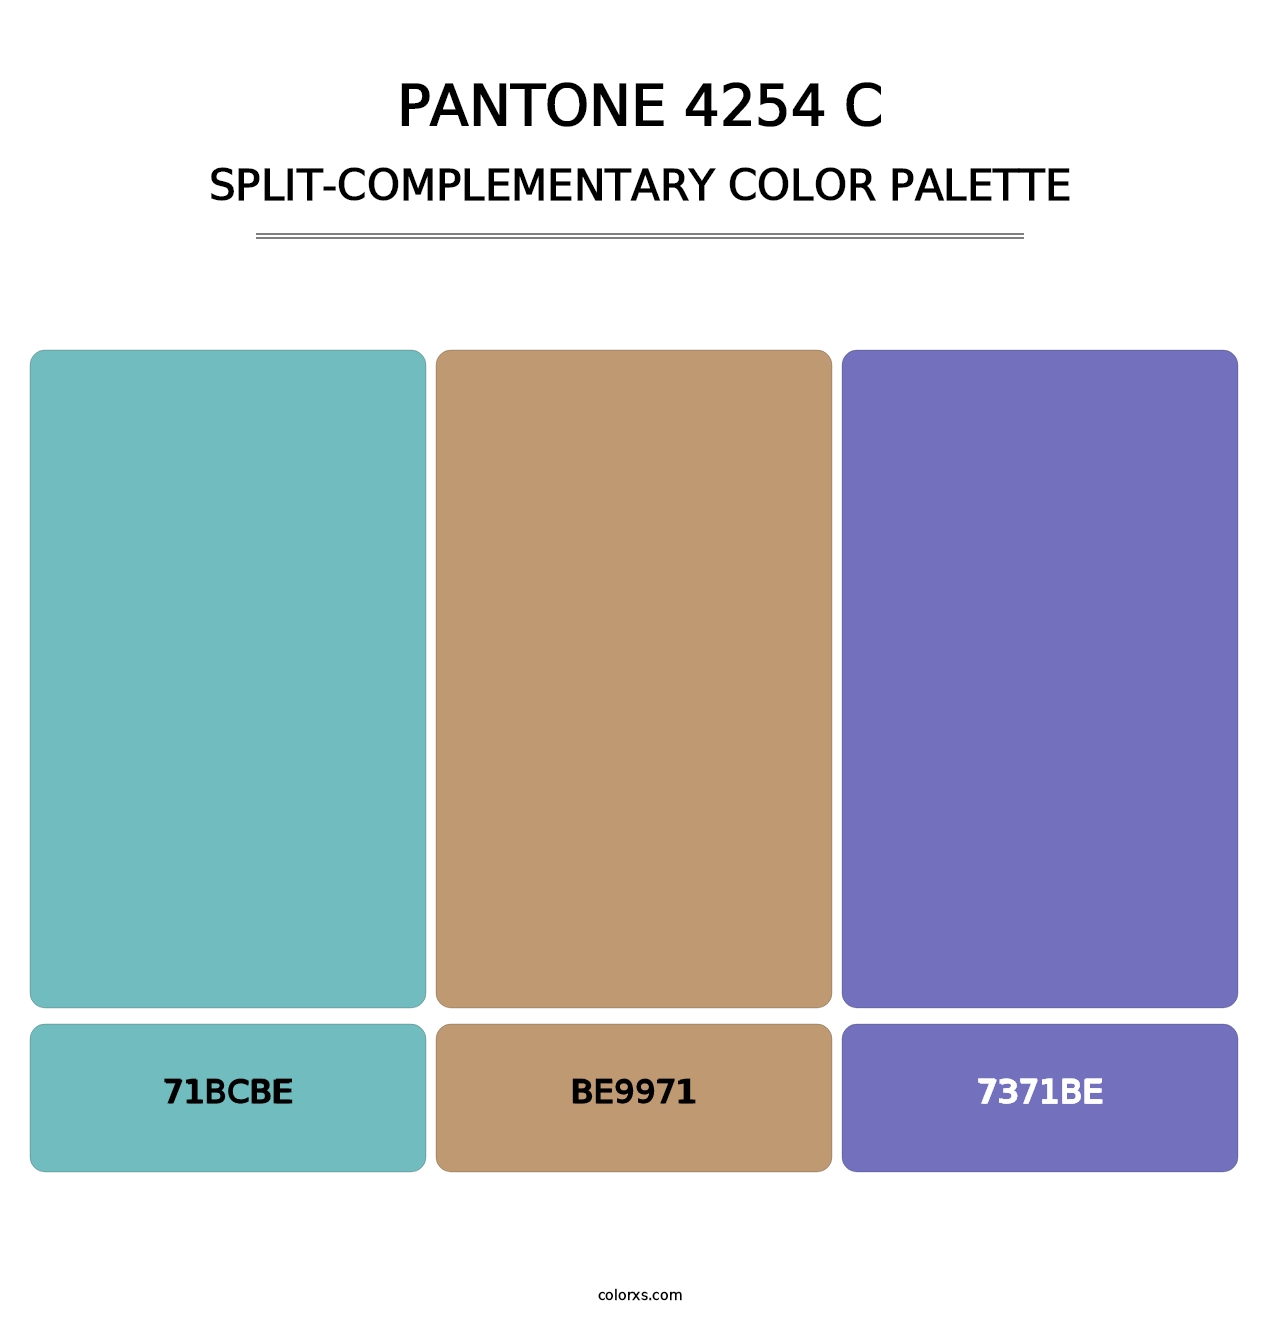 PANTONE 4254 C - Split-Complementary Color Palette